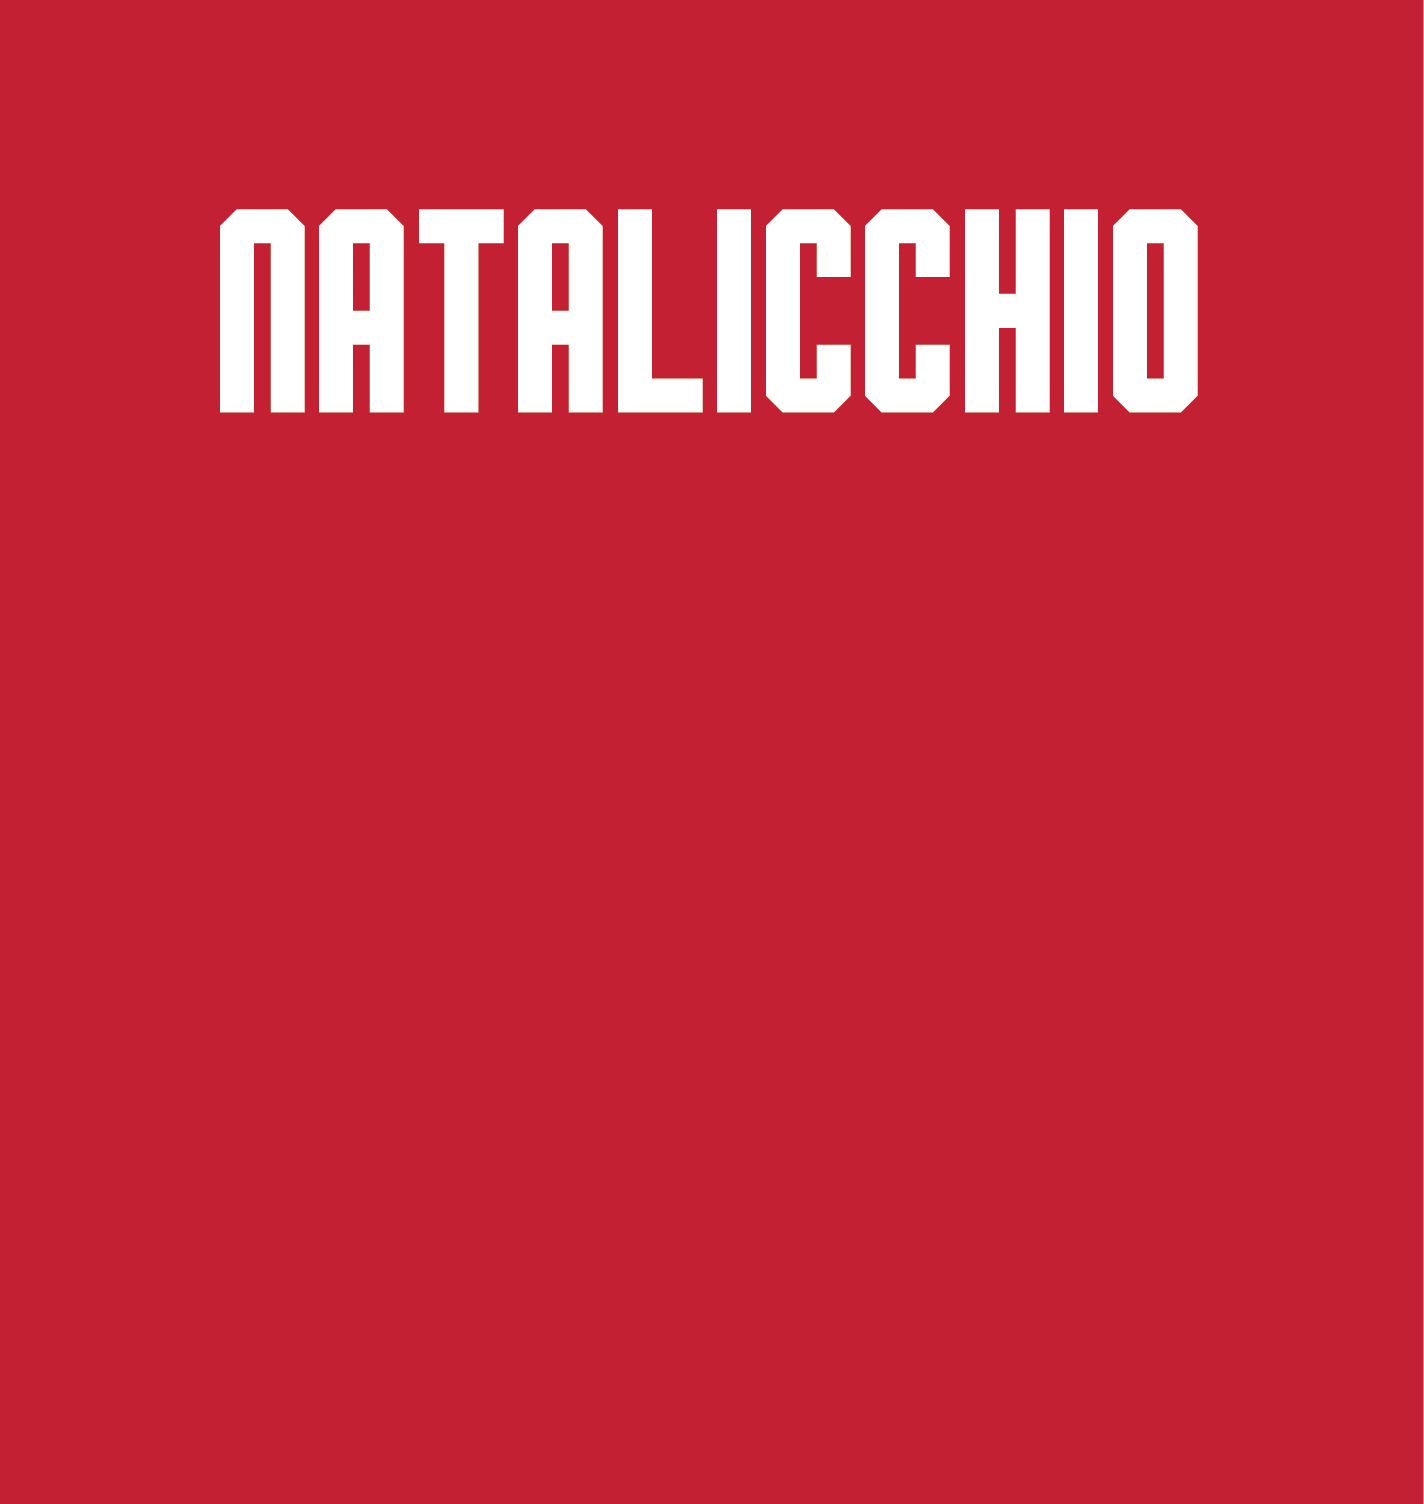 Diana Natalicchio